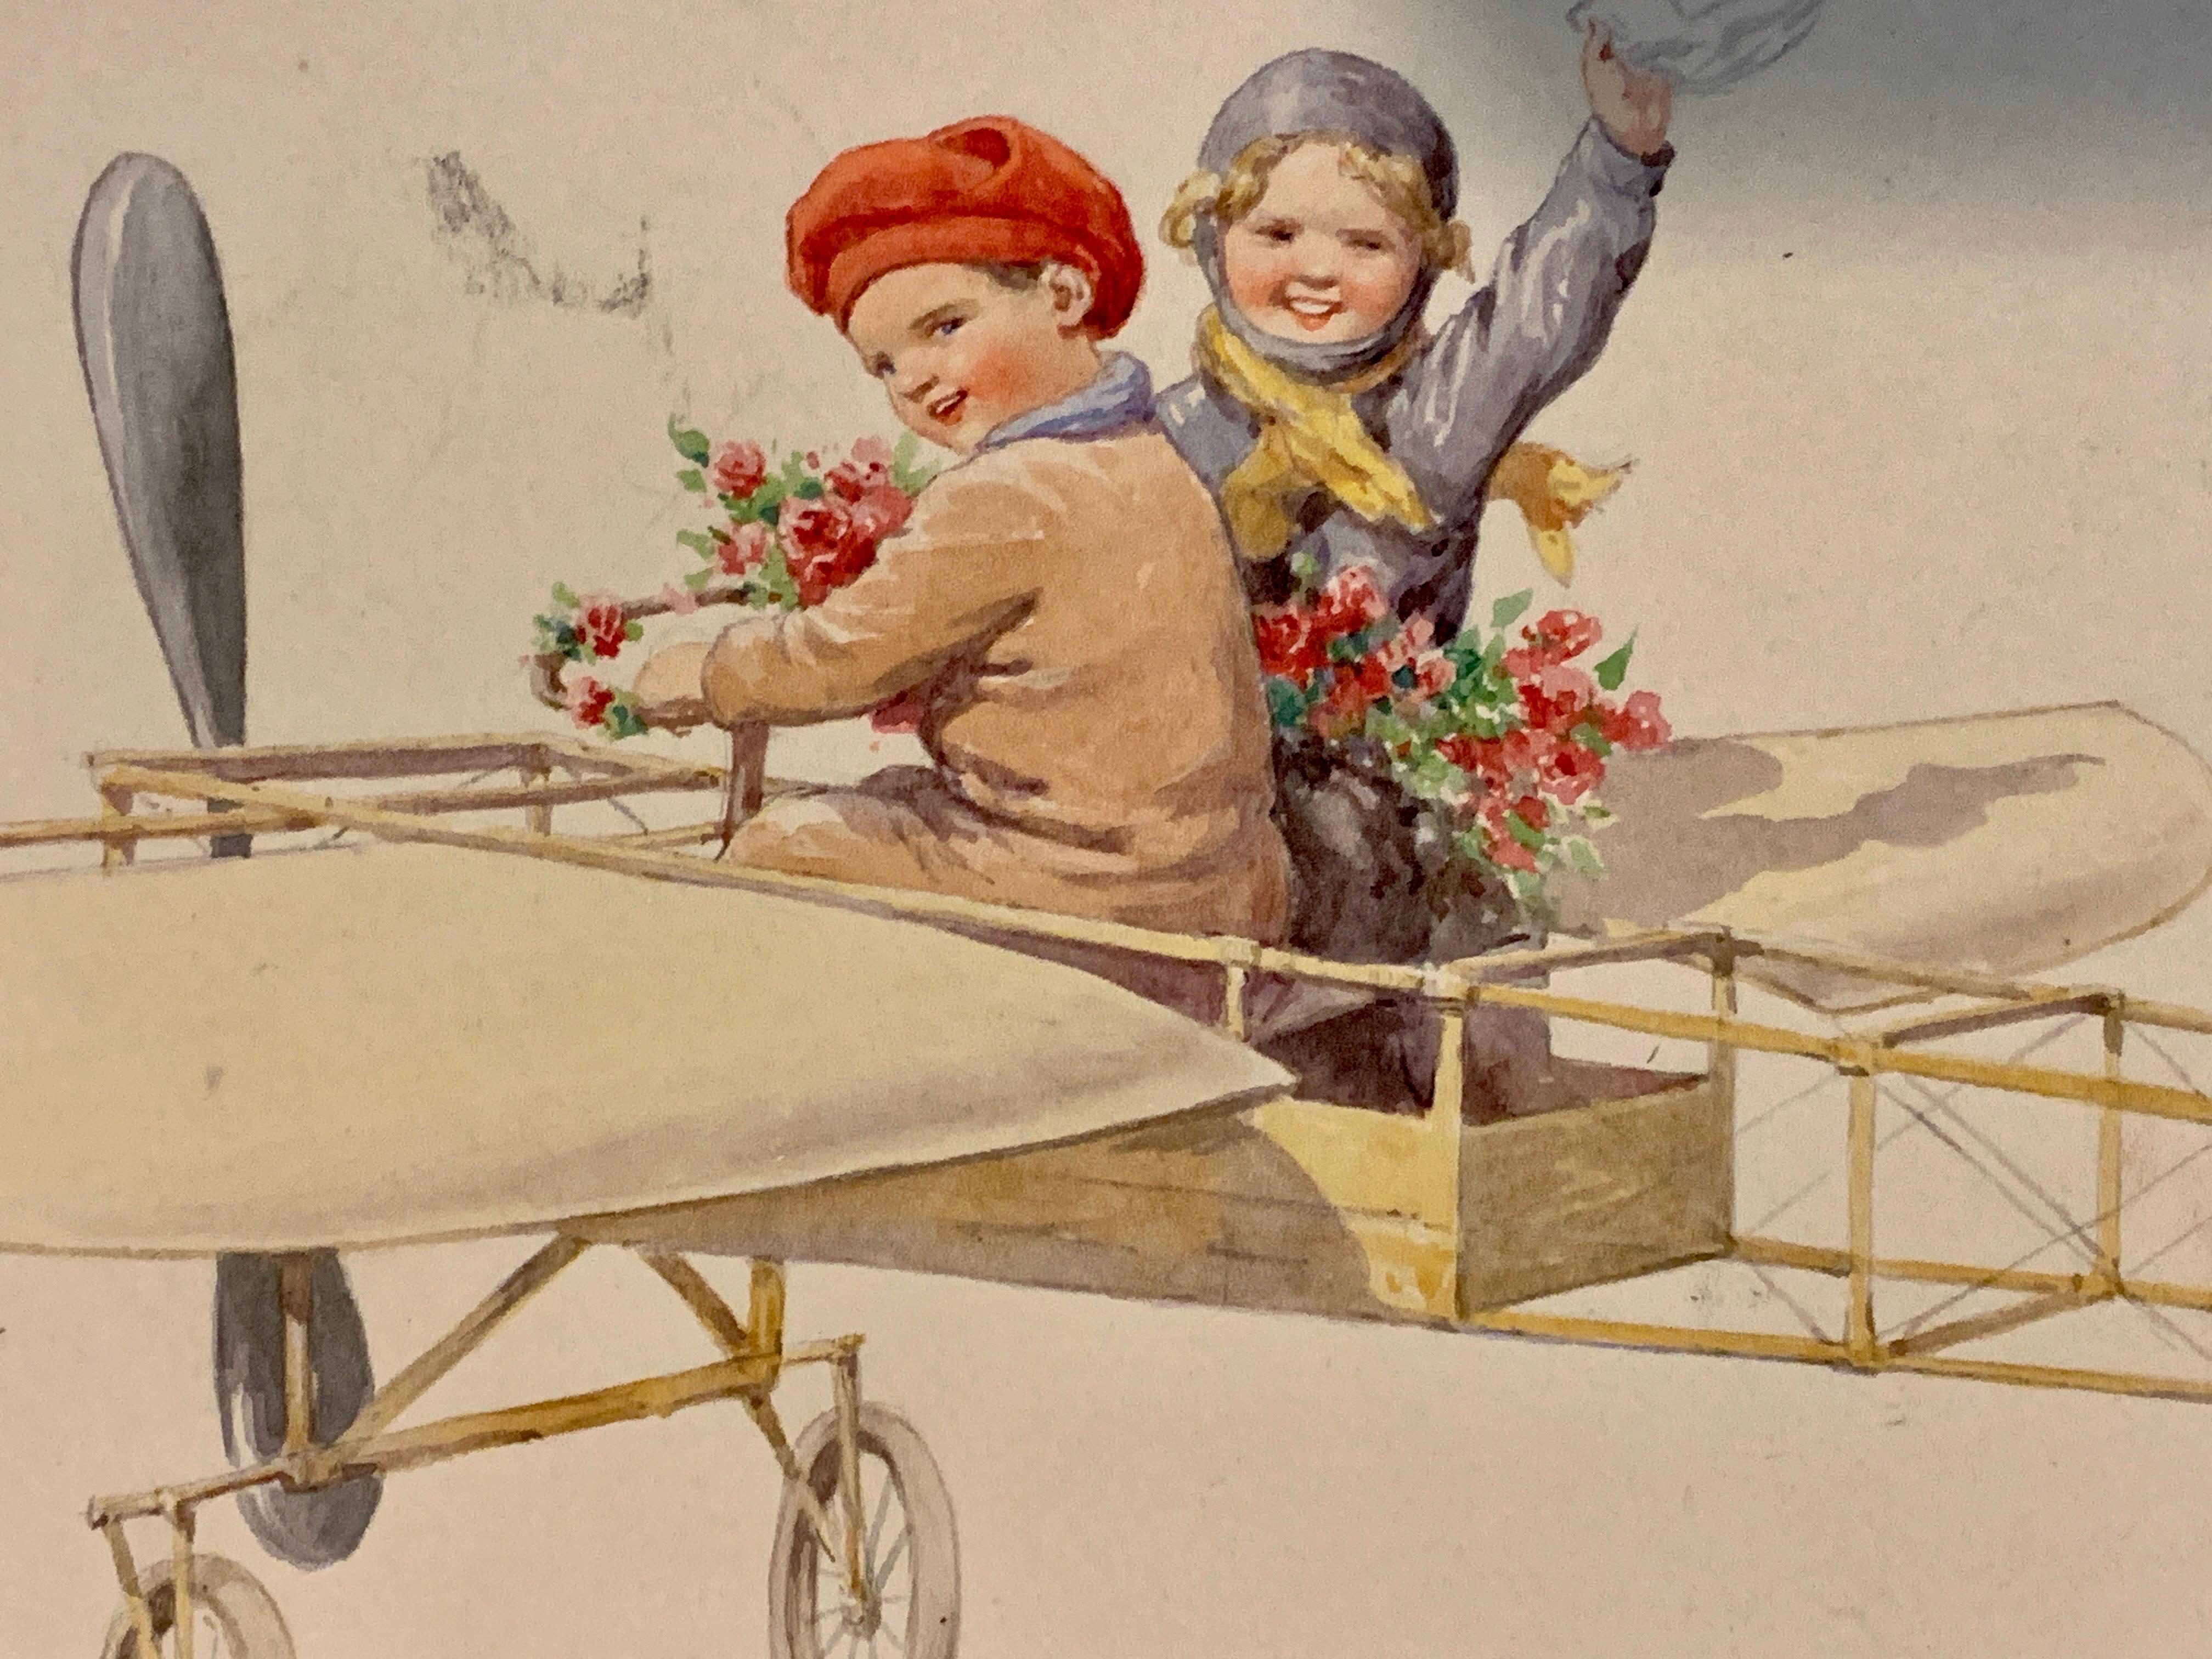 Deutsches Aquarell von Kindern, die in einem Flugzeug über einer Landschaft fliegen, aus dem 19. Jahrhundert  (Beige), Figurative Art, von Karl Feiertag